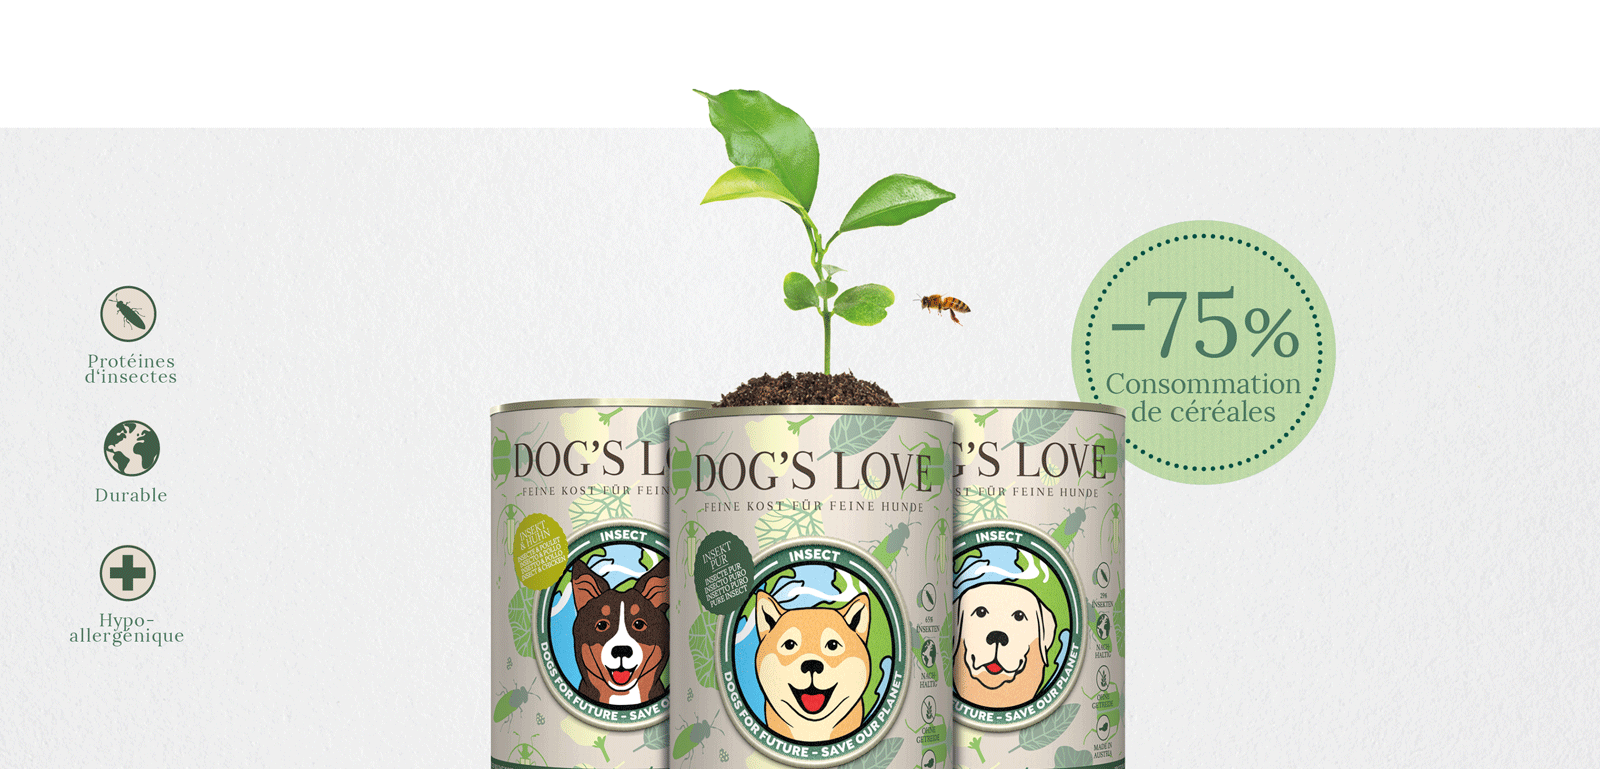 Bannière avec les 3 variétés de DOG'S LOVE Insect, qui contient les informations suivantes : Protéine d'insectes, Durable & Hypoallergénique ainsi que l'information -75% d'eau en moins